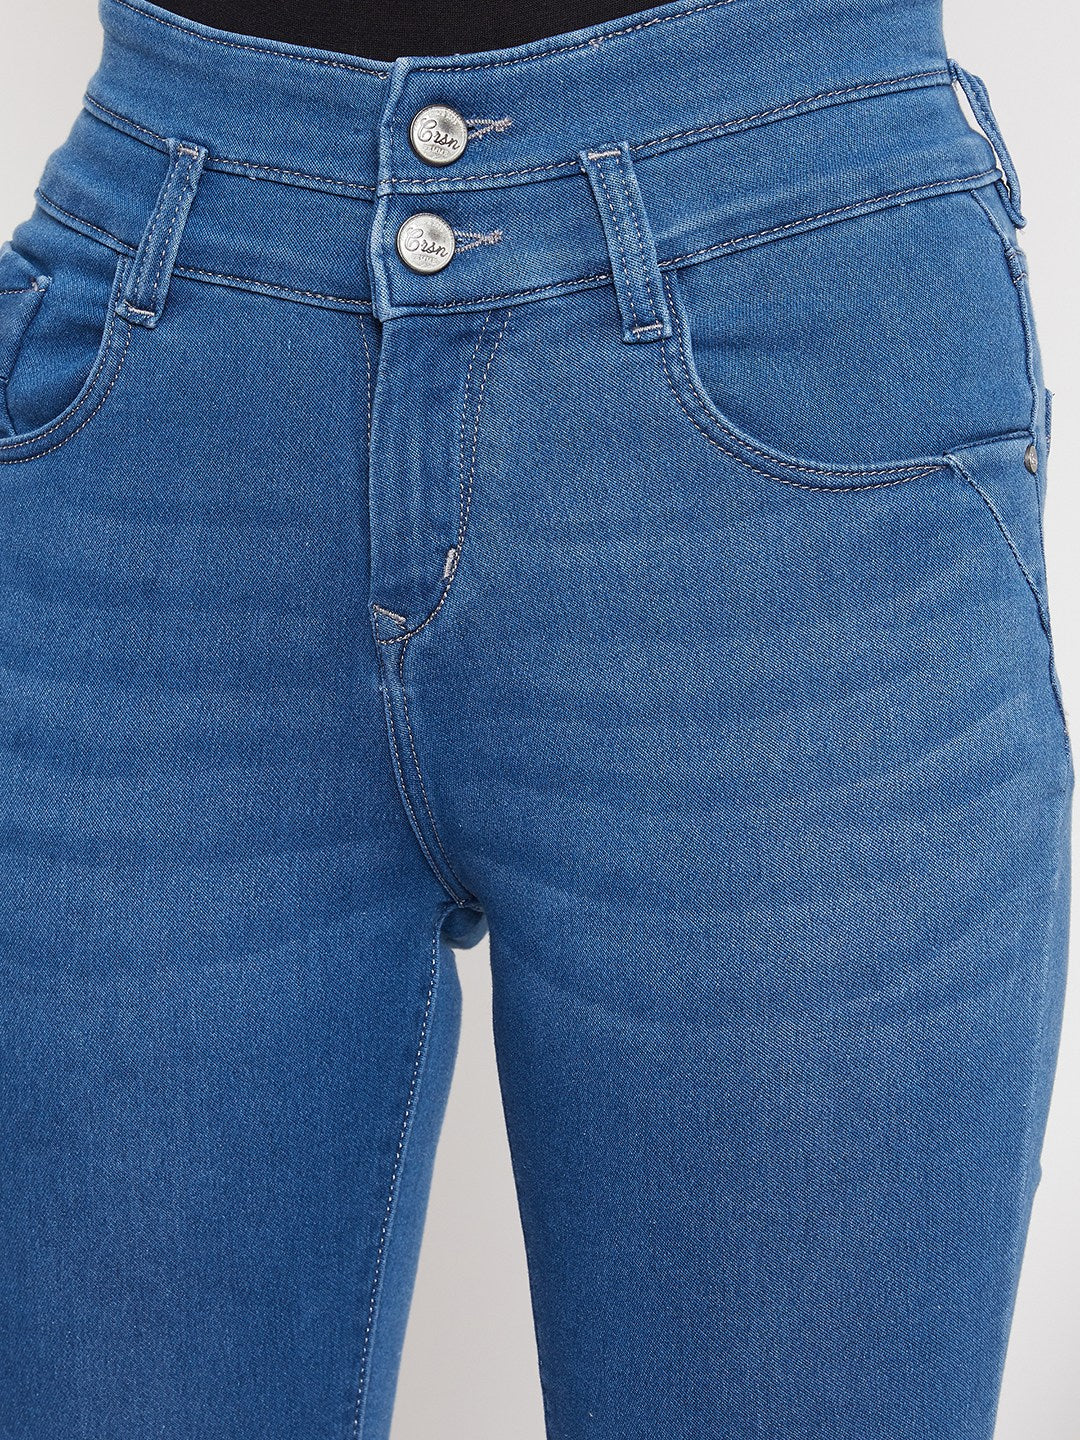 Blue Double Button Bootcut Jeans - Women Jeans